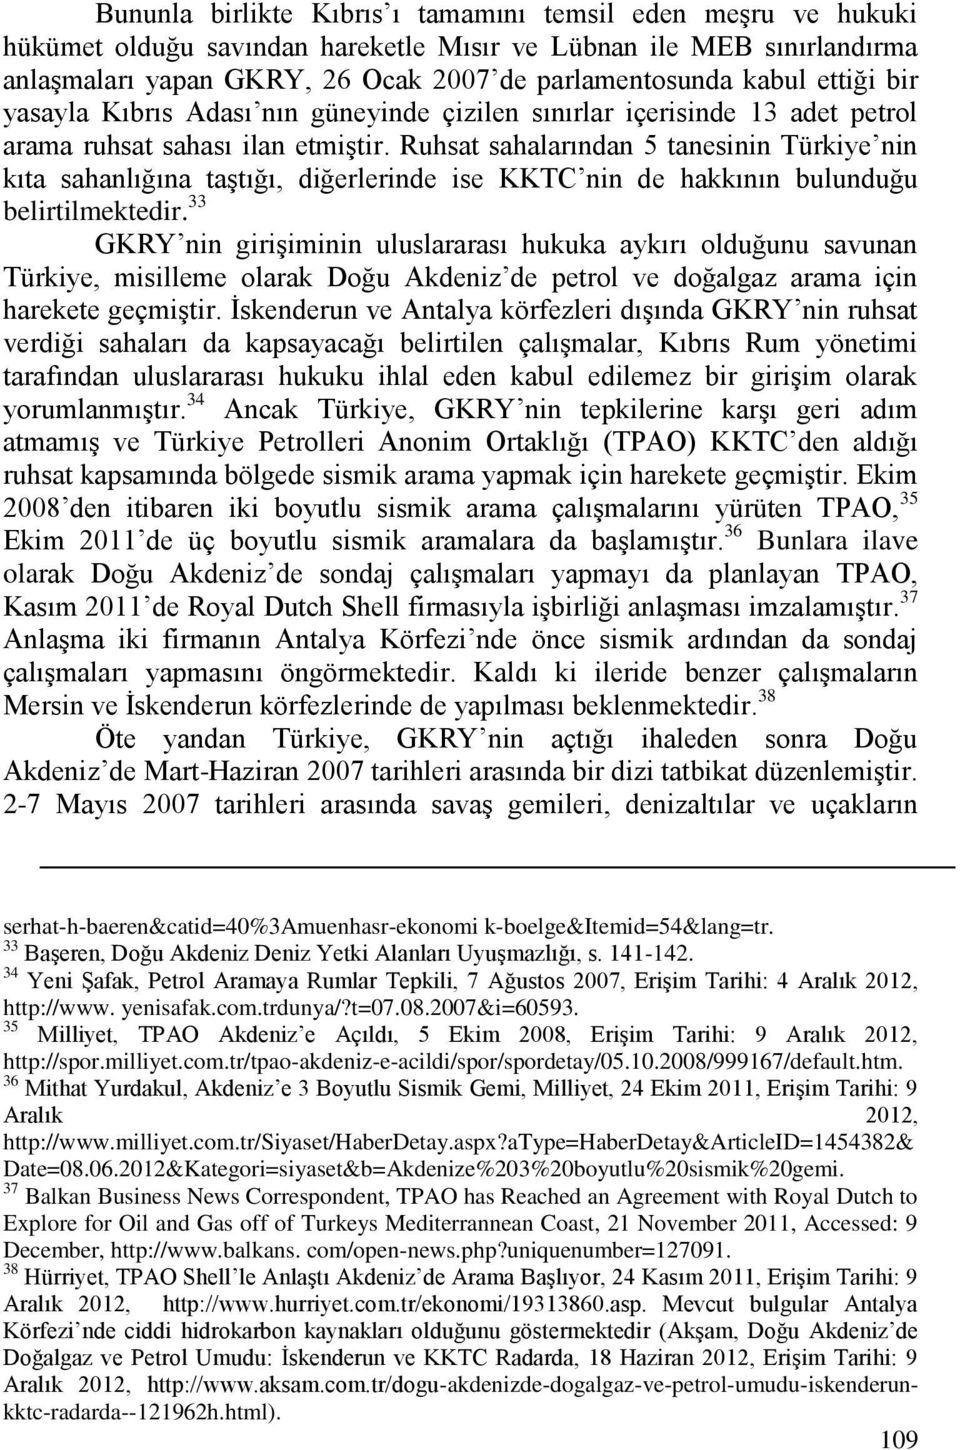 Ruhsat sahalarından 5 tanesinin Türkiye nin kıta sahanlığına taştığı, diğerlerinde ise KKTC nin de hakkının bulunduğu belirtilmektedir.